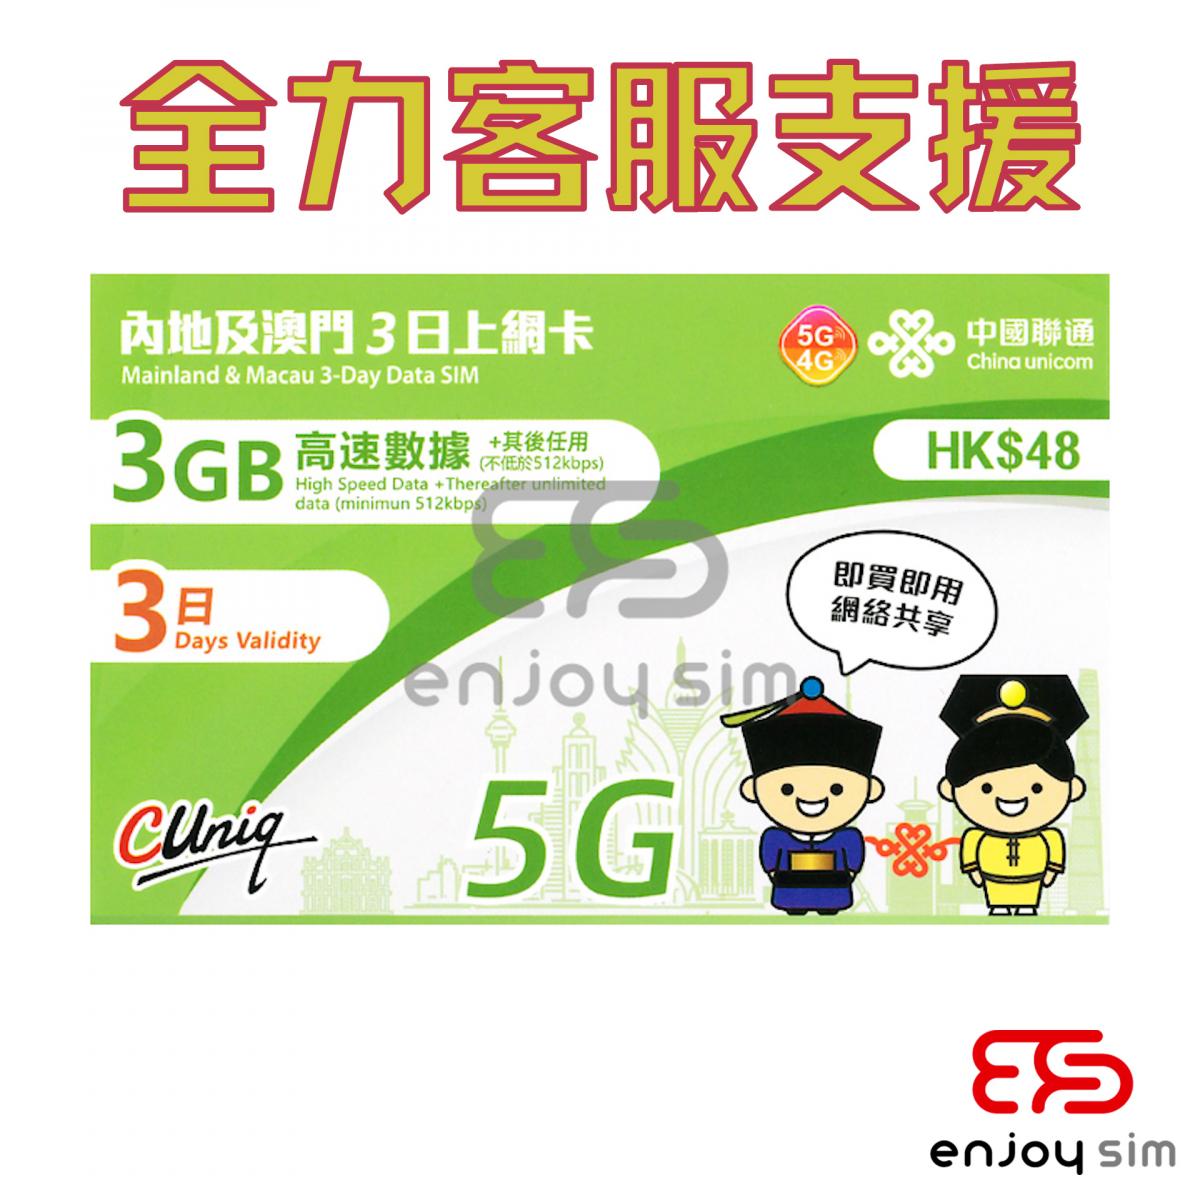 3日【內地、澳門】(3GB) 5G/4G 無限上網卡數據卡SIM咭